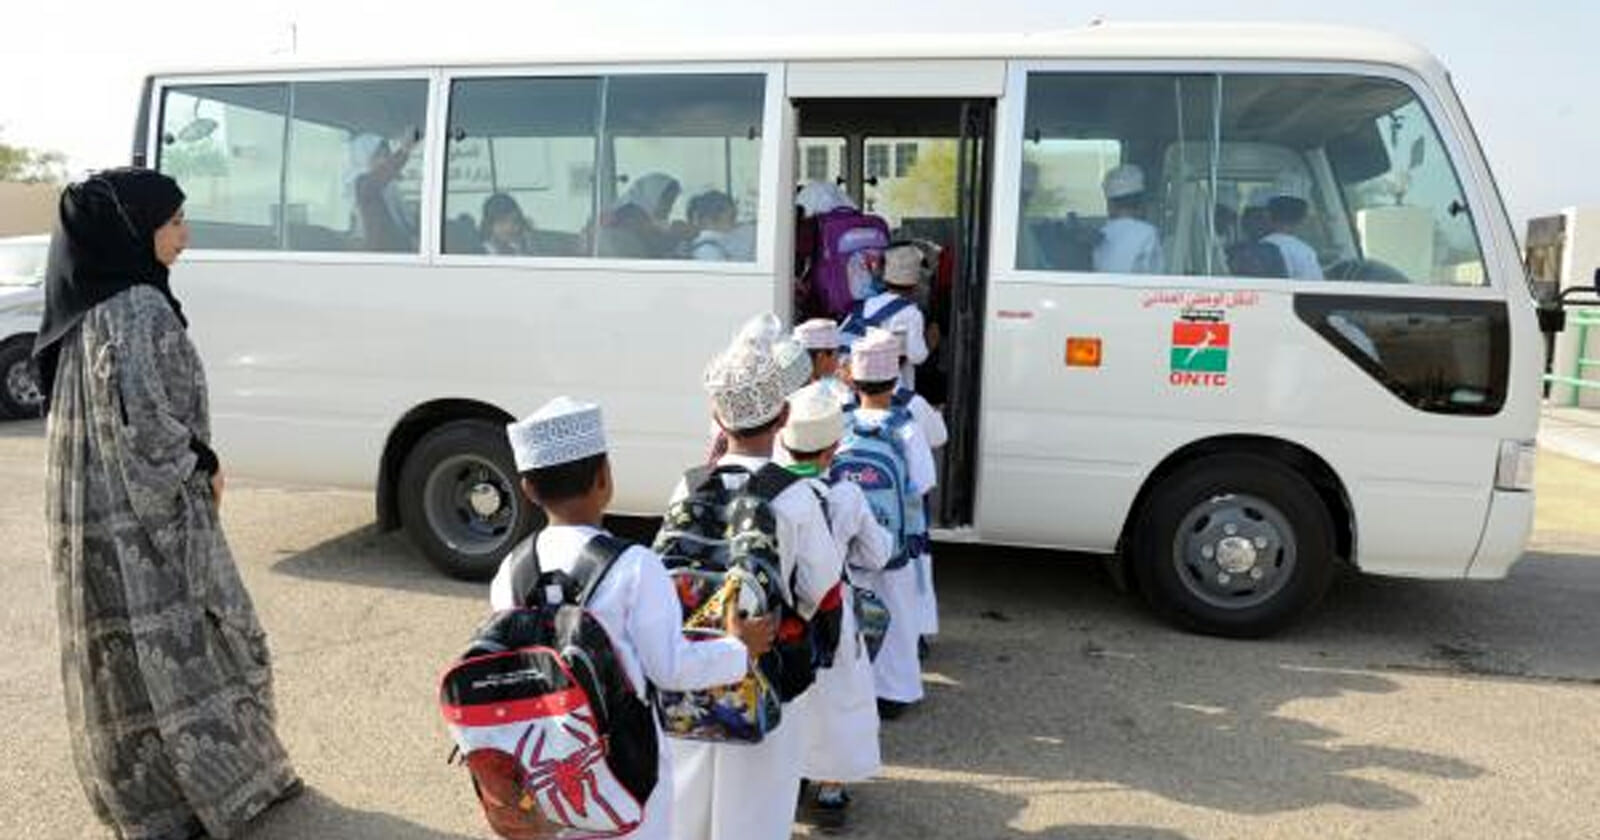 سقوط مروع لطفلة عمانية من الباص المدرسي في سلطنة عمان watanserb.com